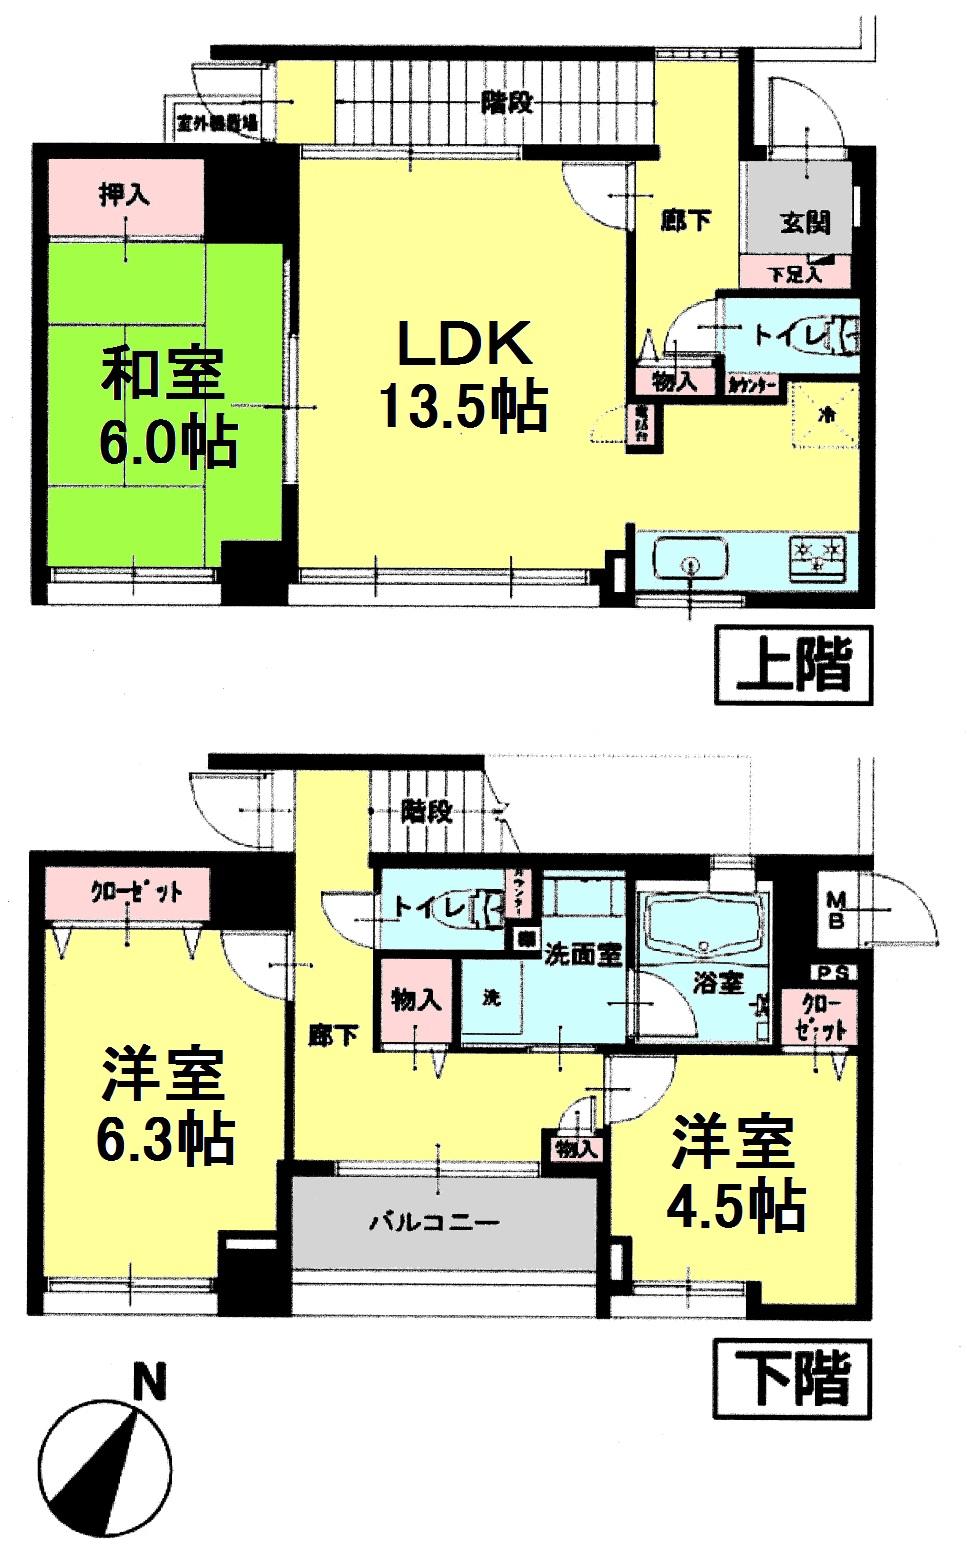 Floor plan. 3LDK, Price 27,900,000 yen, Occupied area 81.44 sq m , Balcony area 3.94 sq m floor plan